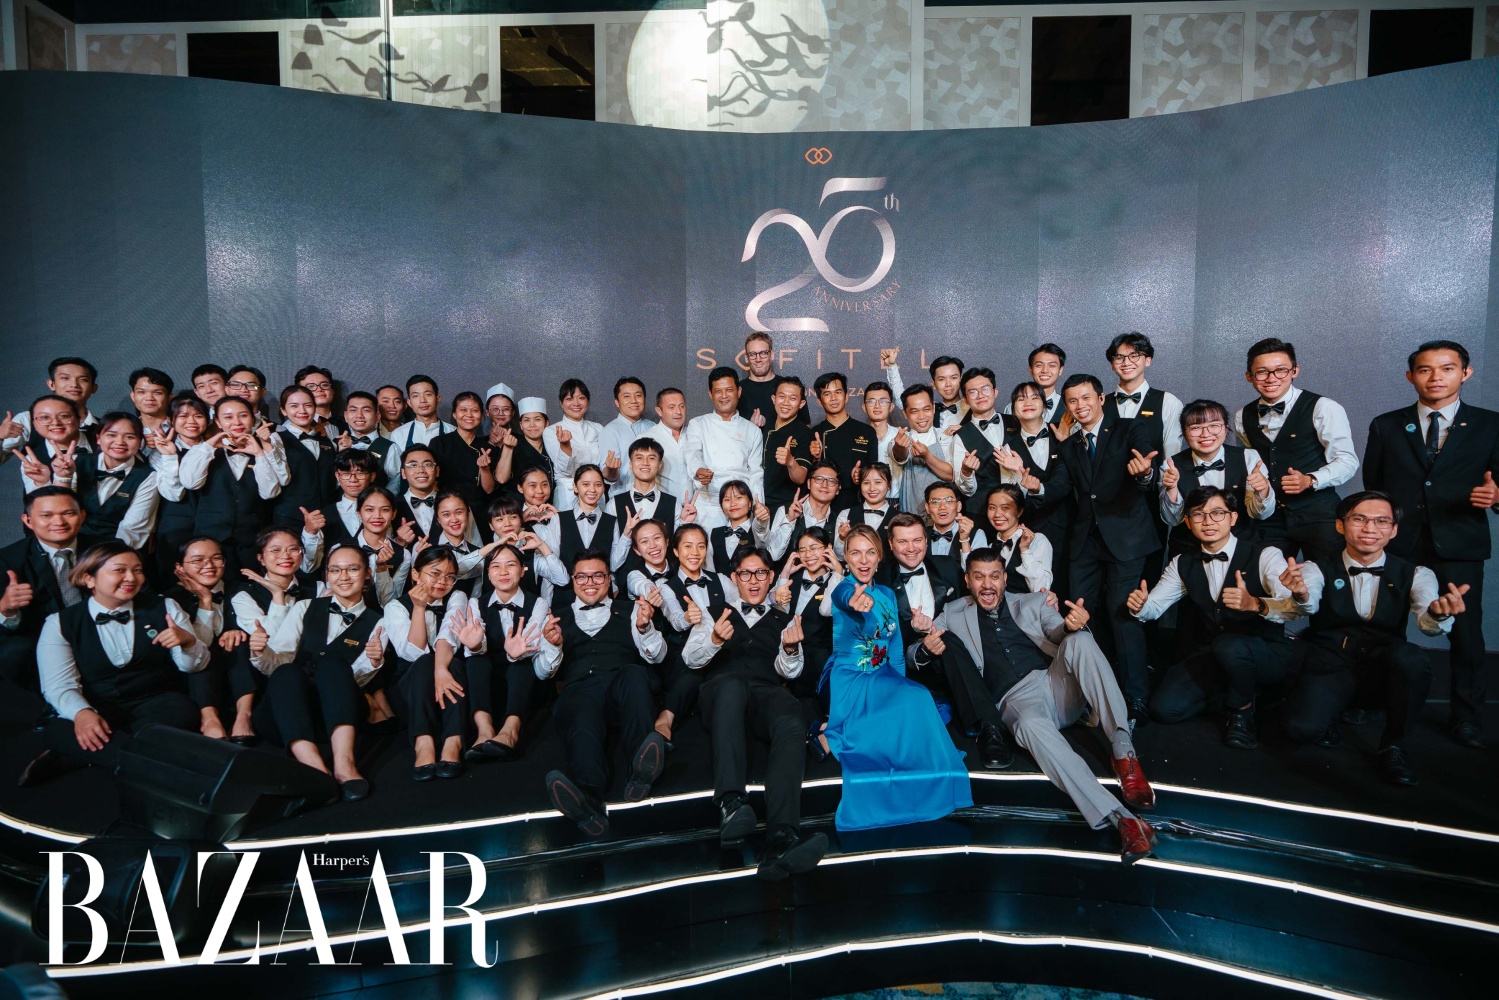 Maud Bailly (áo dài xanh) và đội ngũ Sofitel Saigon Plaza trong gala kỷ niệm 25 năm thành lập 